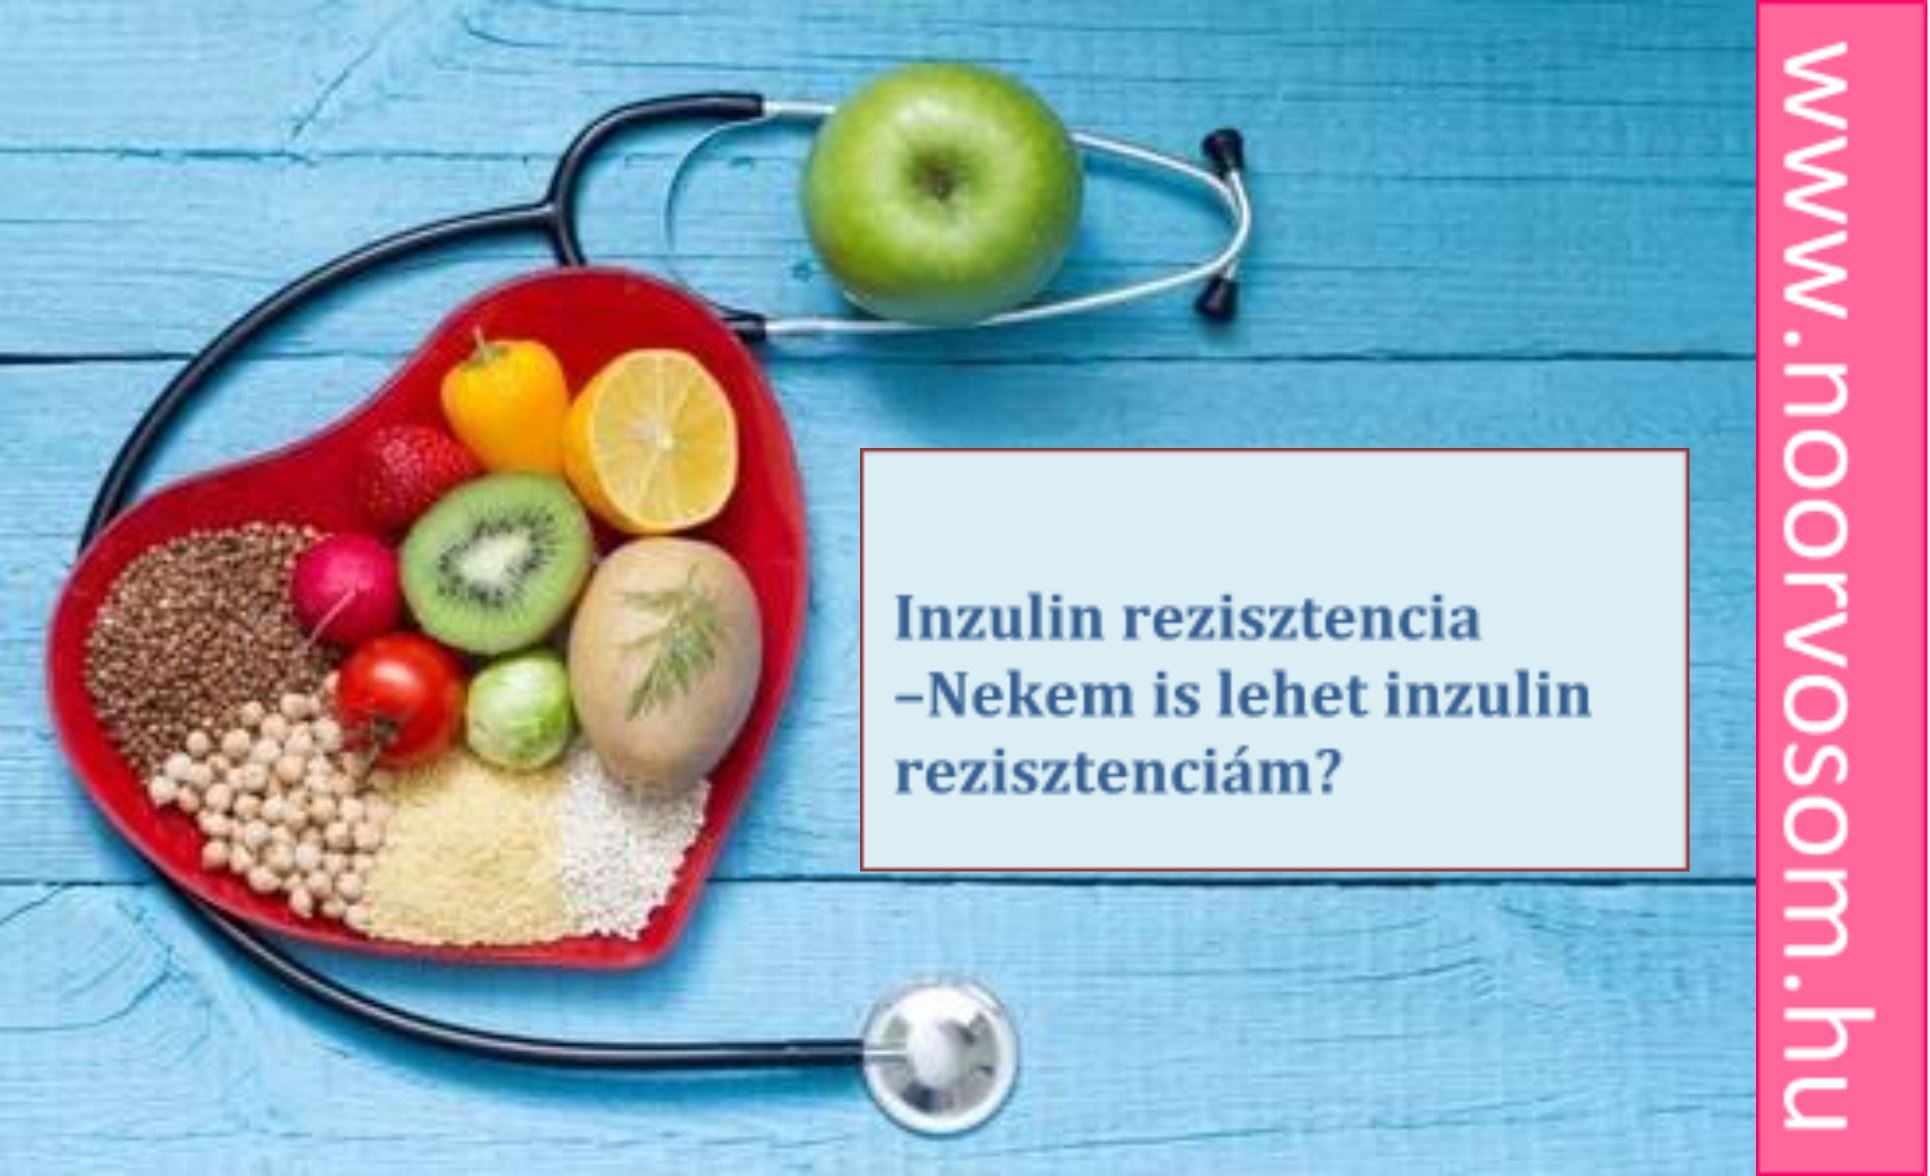 Inzulin rezisztencia – Nekem is lehet inzulin rezisztenciám?